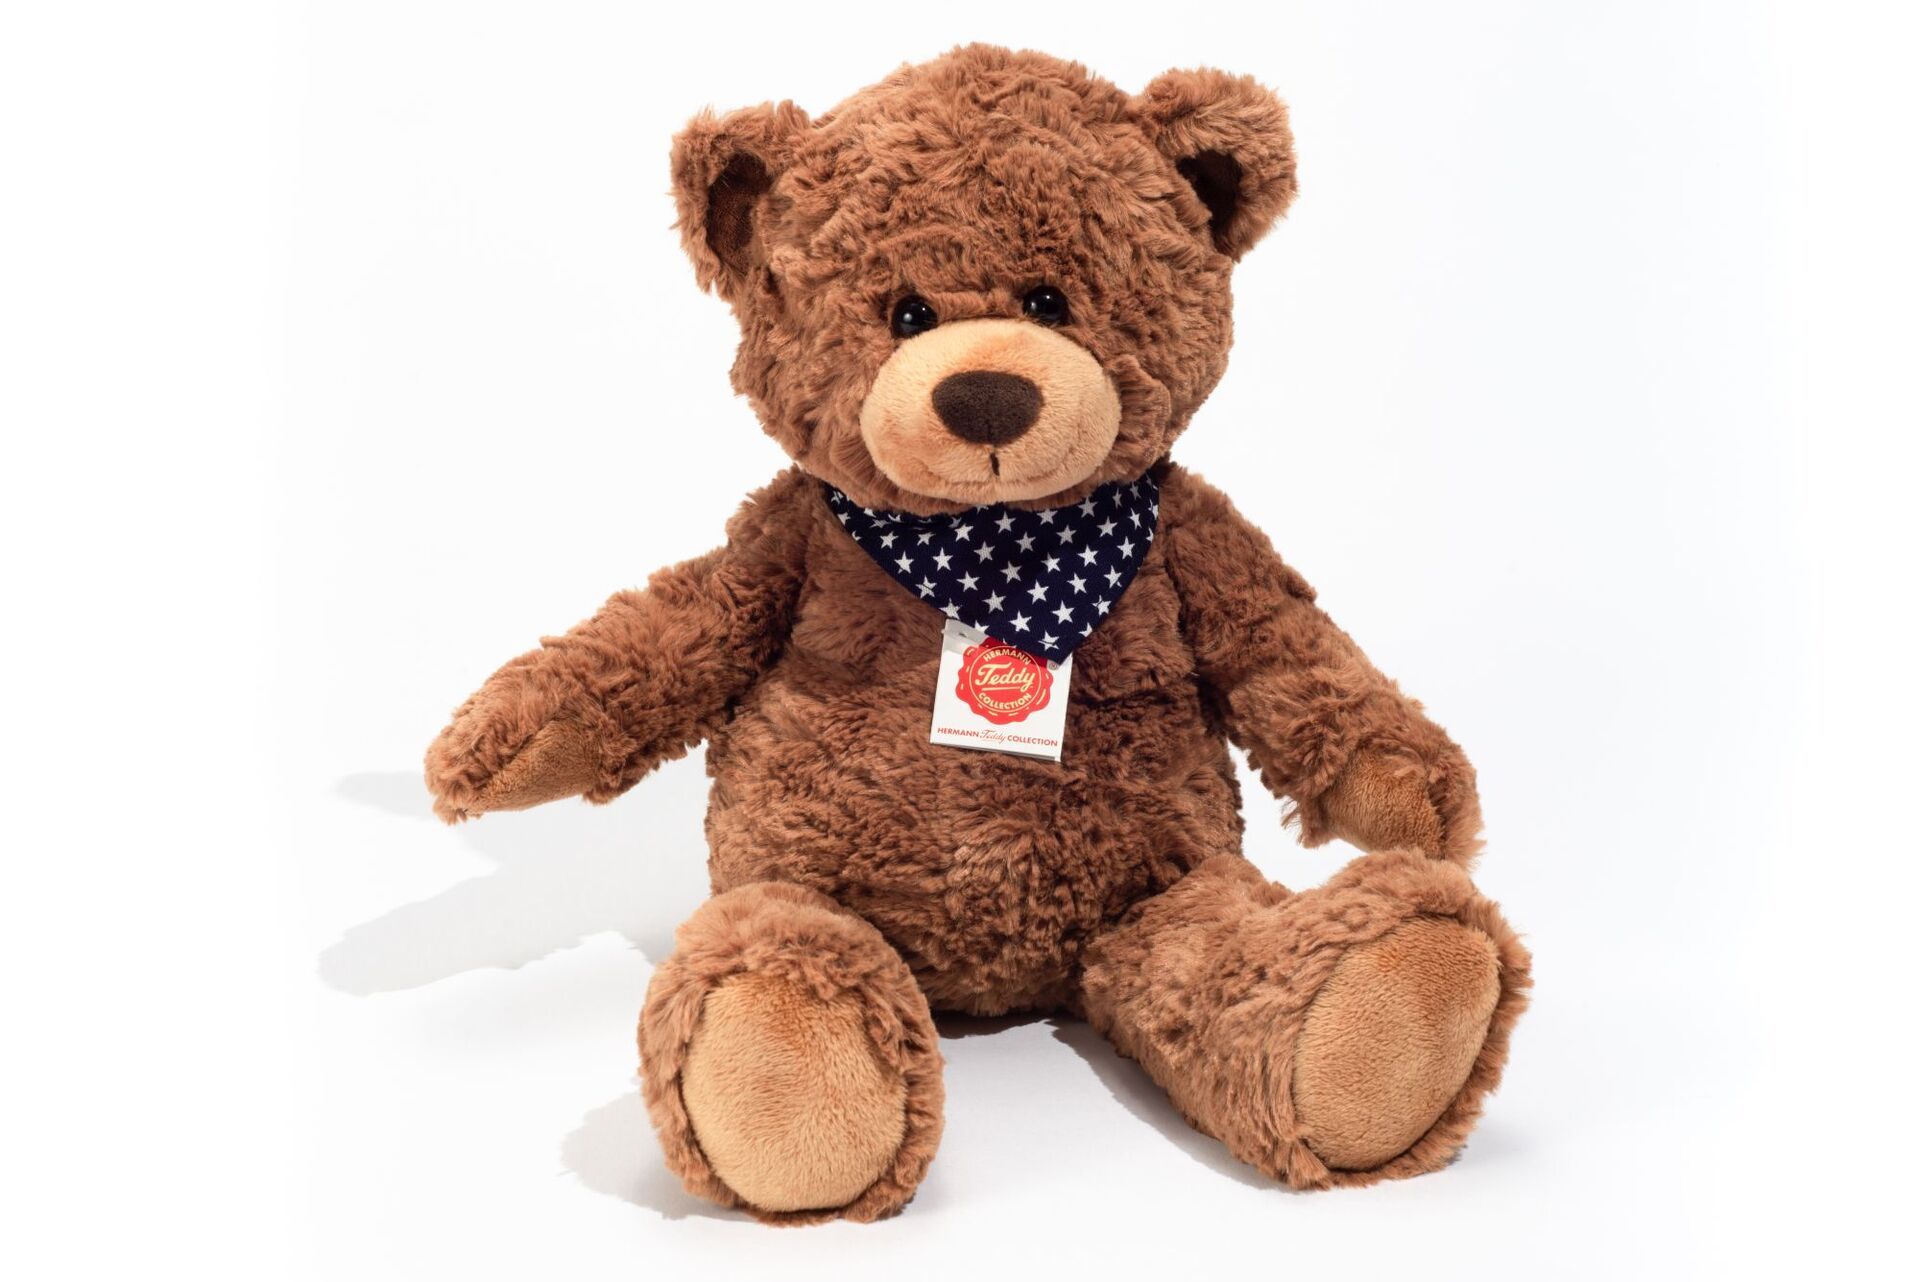  Teddy orso bruno 38 cm c/fazzoletto